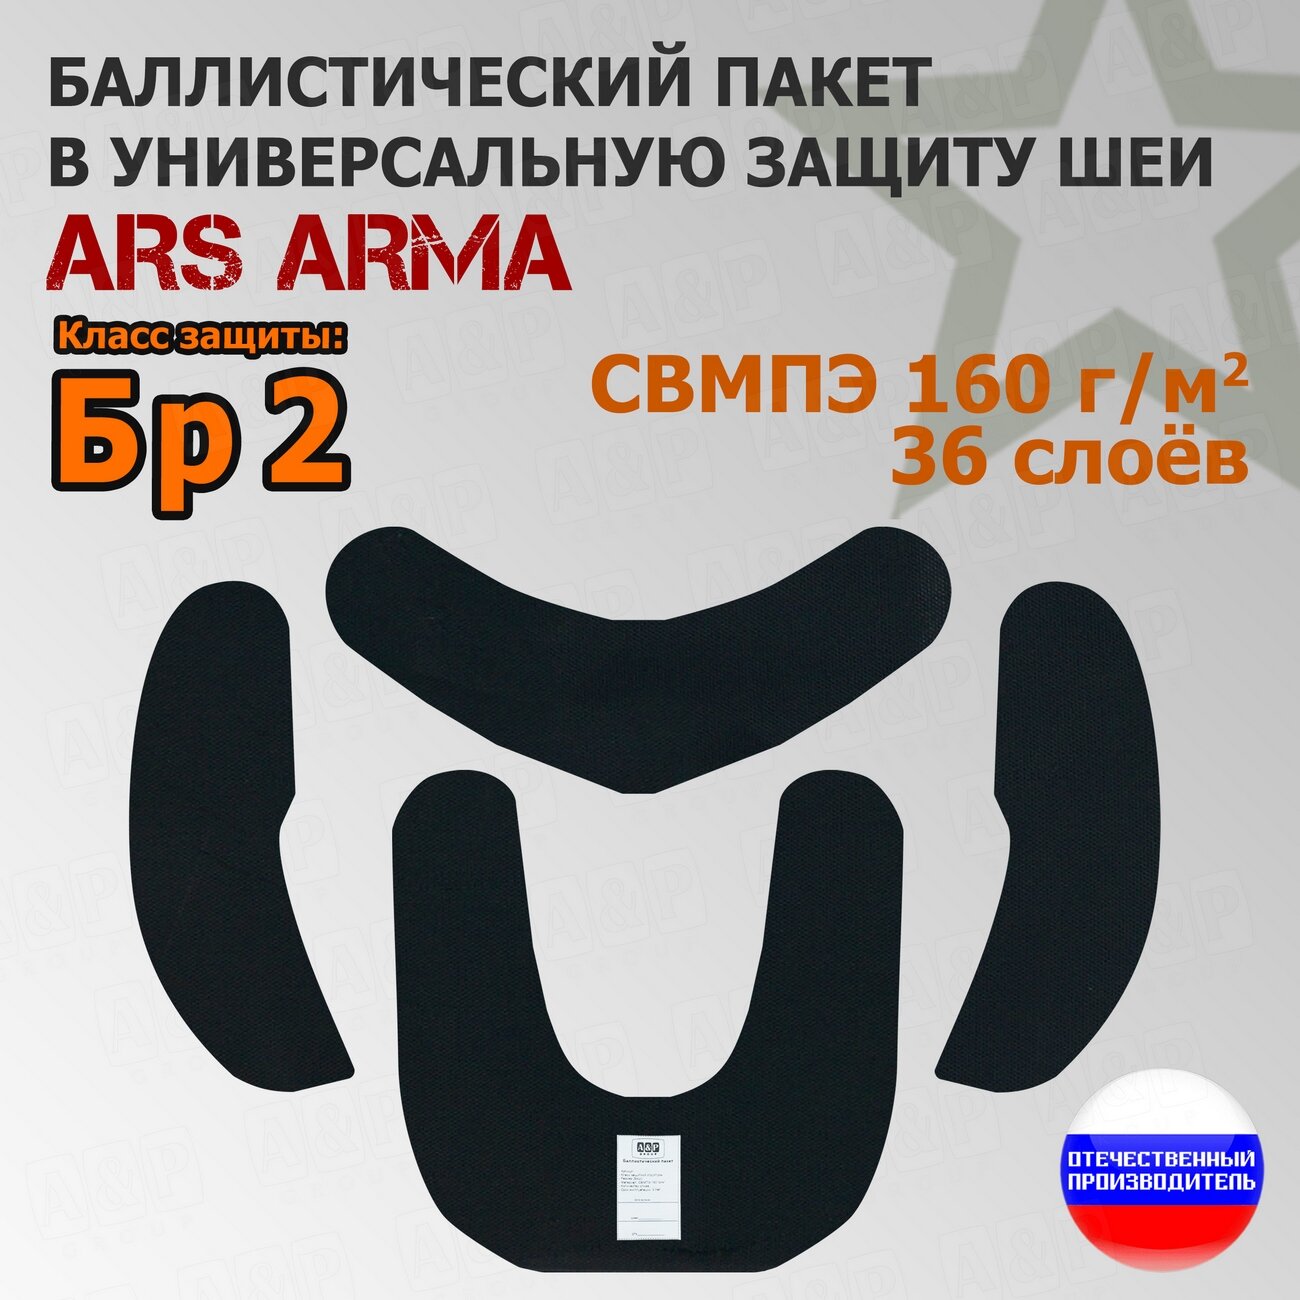 Баллистический пакет в универсальную защиту шеи Ars Arma. Класс защитной структуры Бр 2.